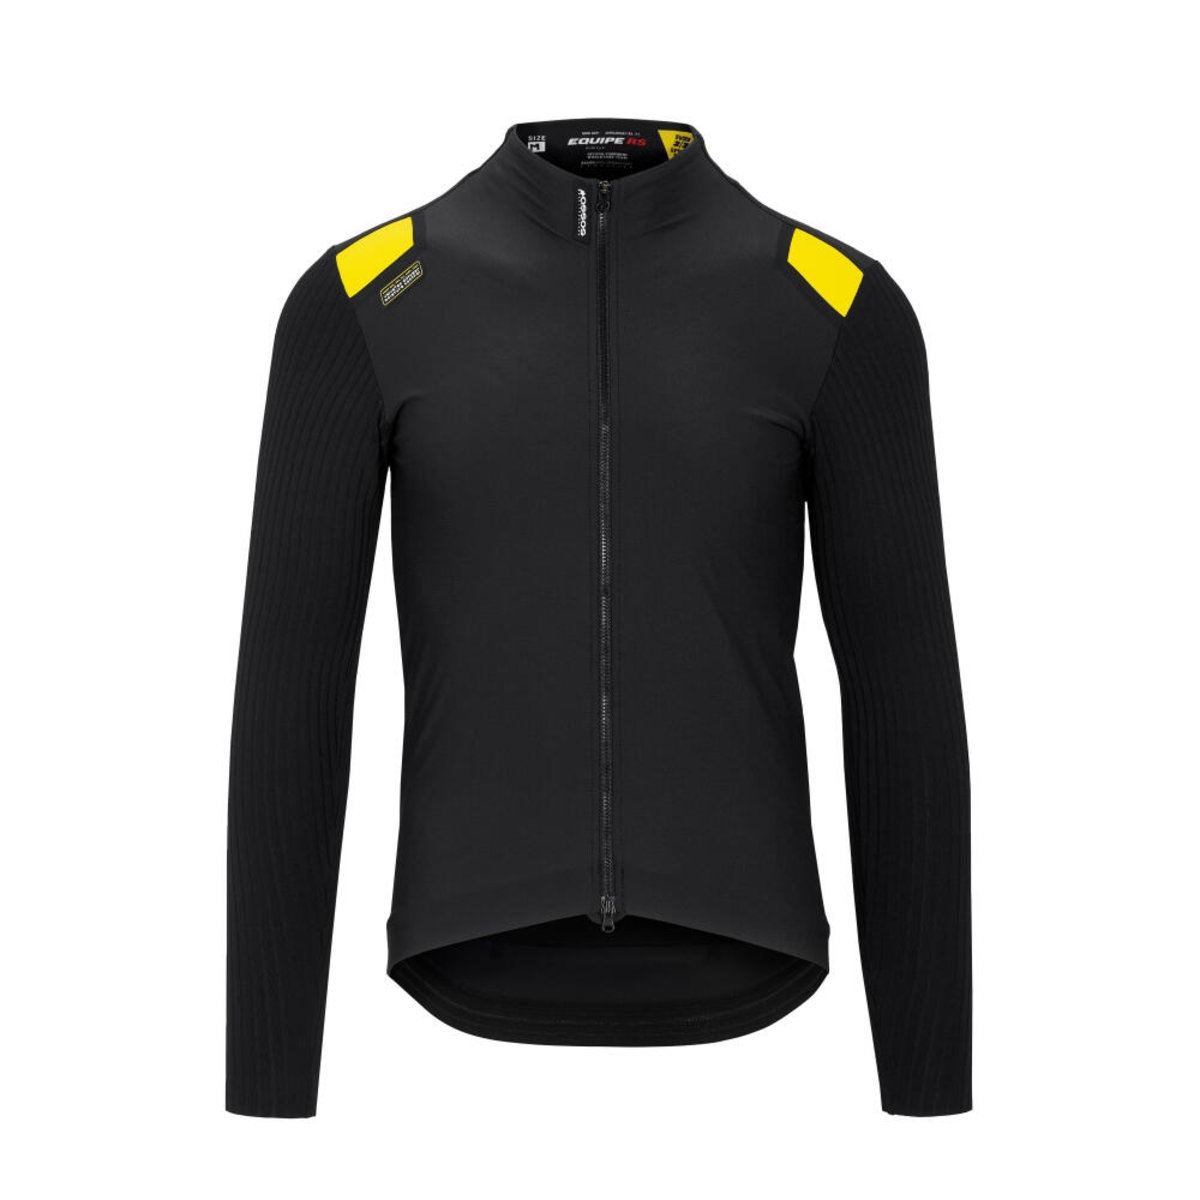 Куртка ASSOS Equipe RS Spring Fall Jacket, длин. рукав, мужская, черная с желтым, M фото 1